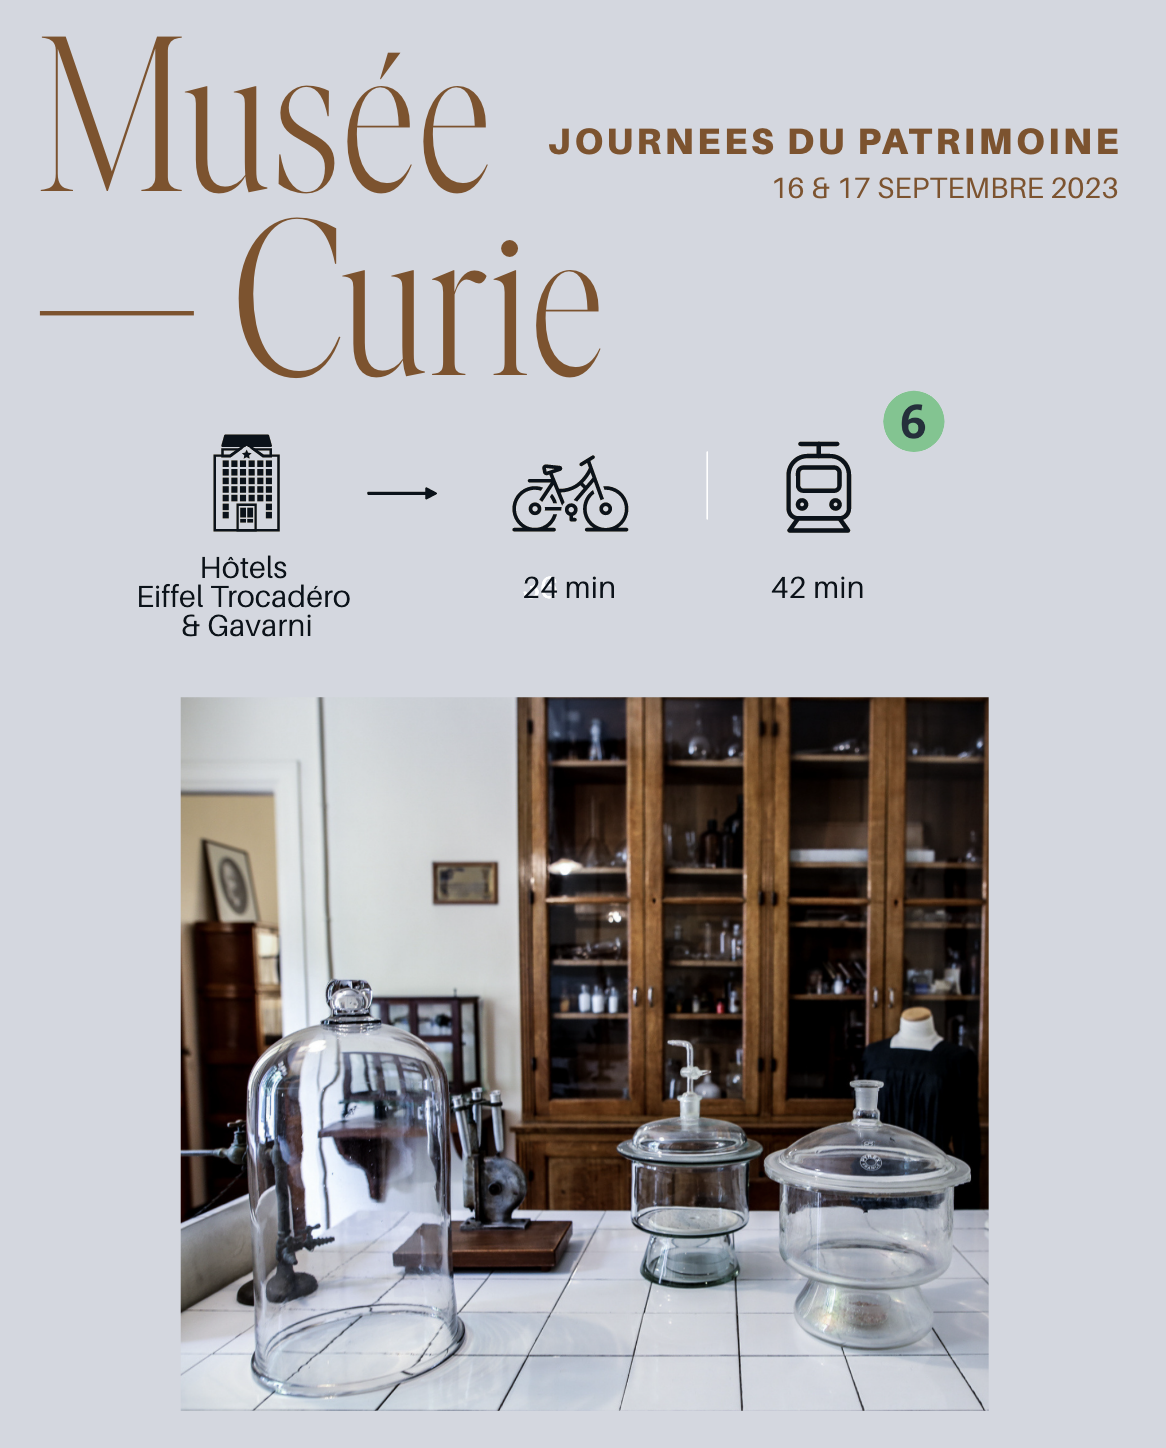 Musée Curie, Heritage Days!